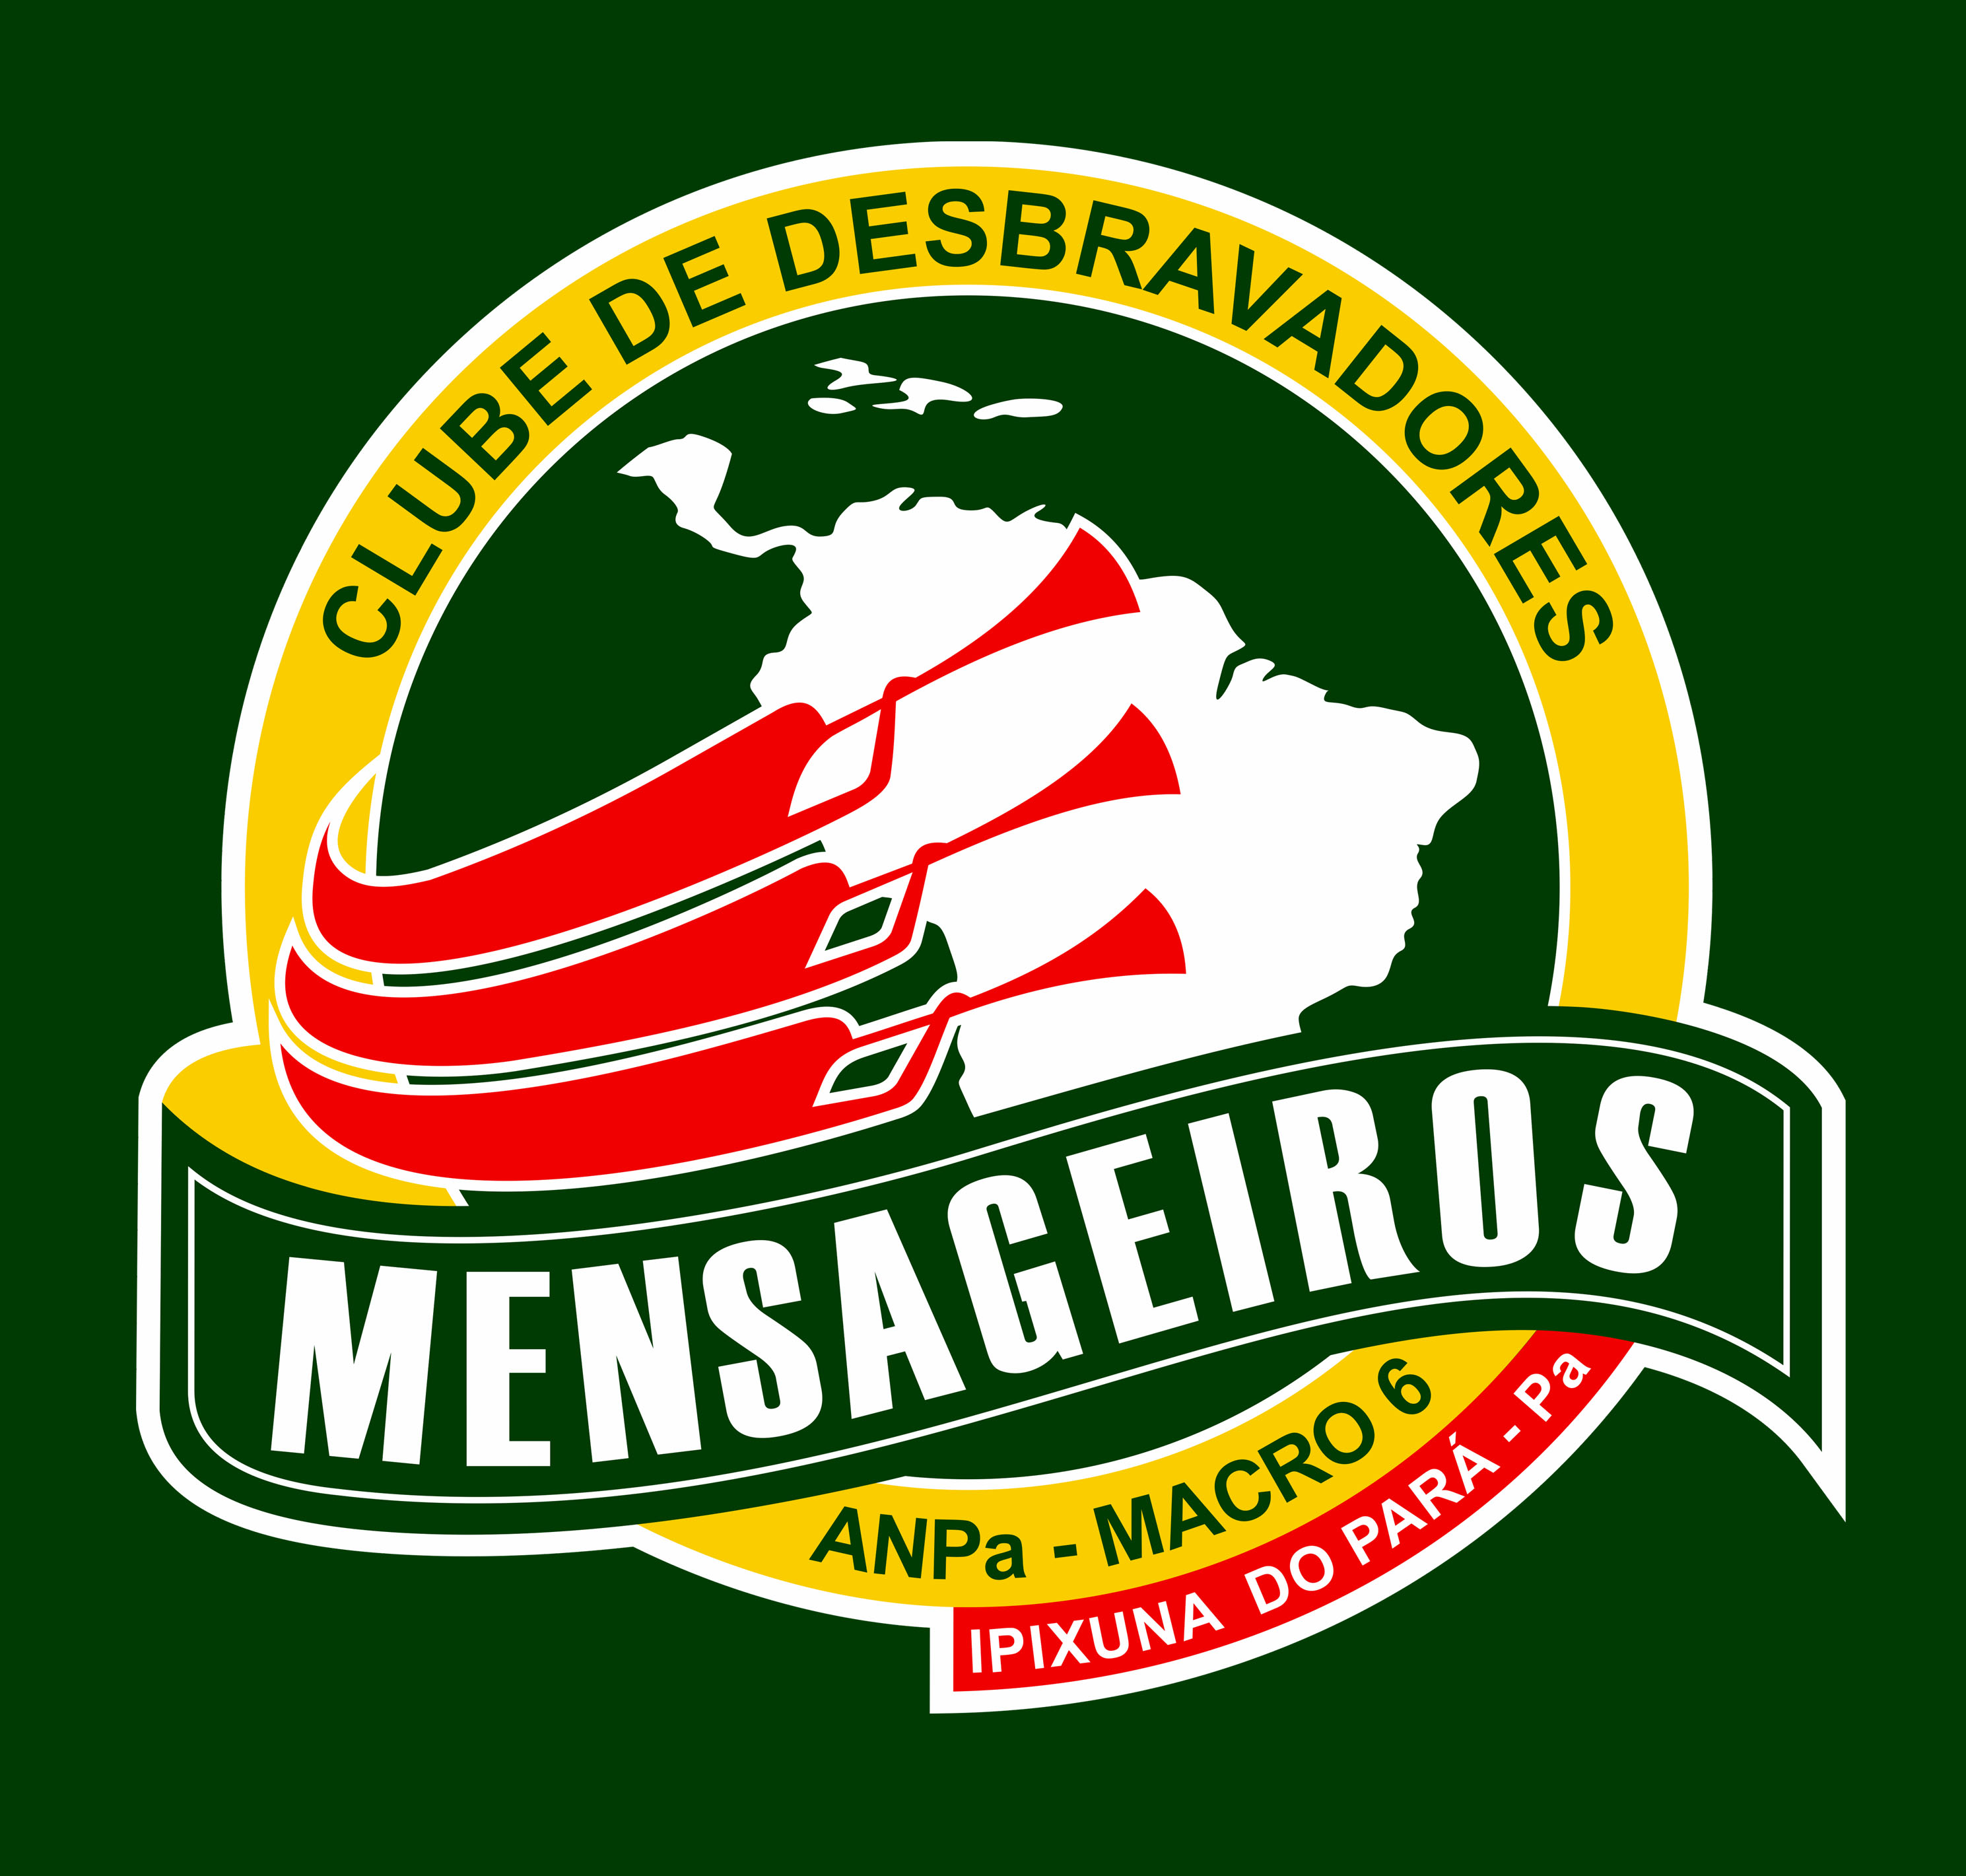 MENSAGEIROS - IPIXUNA